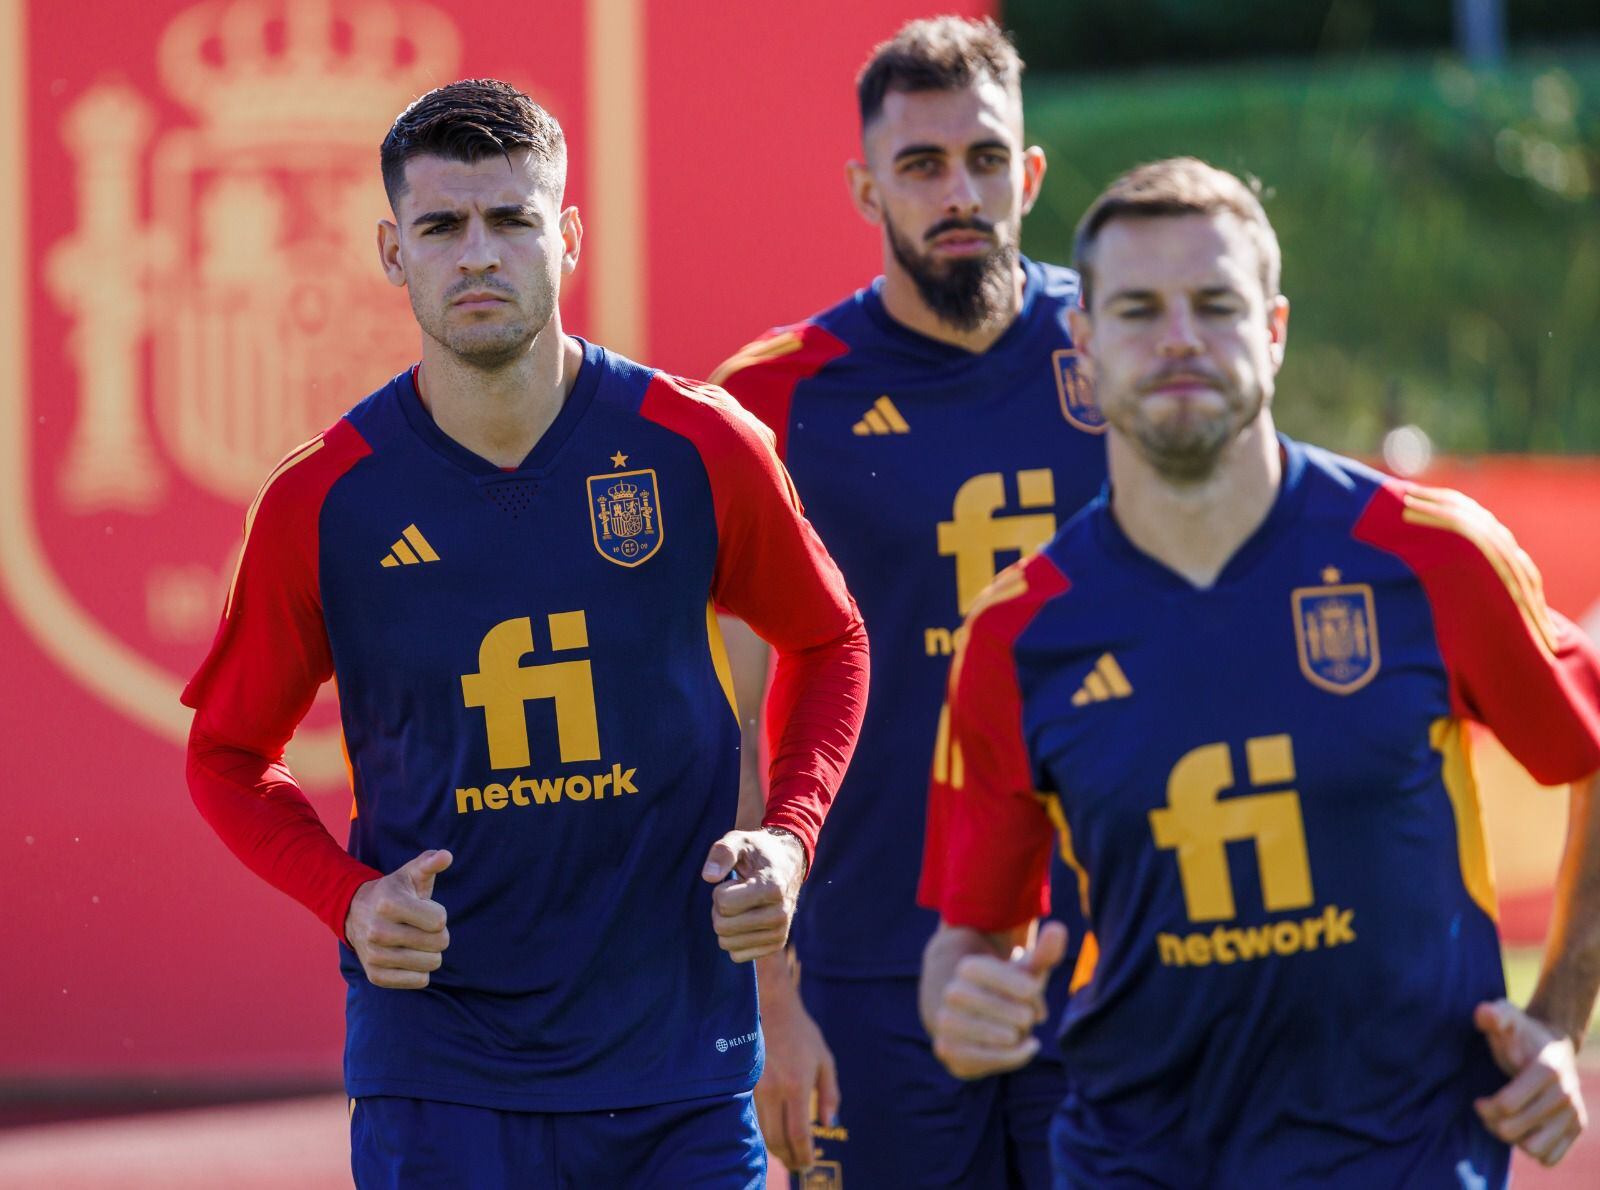 La selección española prepara sus próximos partidos de la Copa de Naciones contra Suiza y Portugal, pero desde ya piensa en el Mundial de Qatar 2022. (Foto Twitter Federación de Fútbol de España).